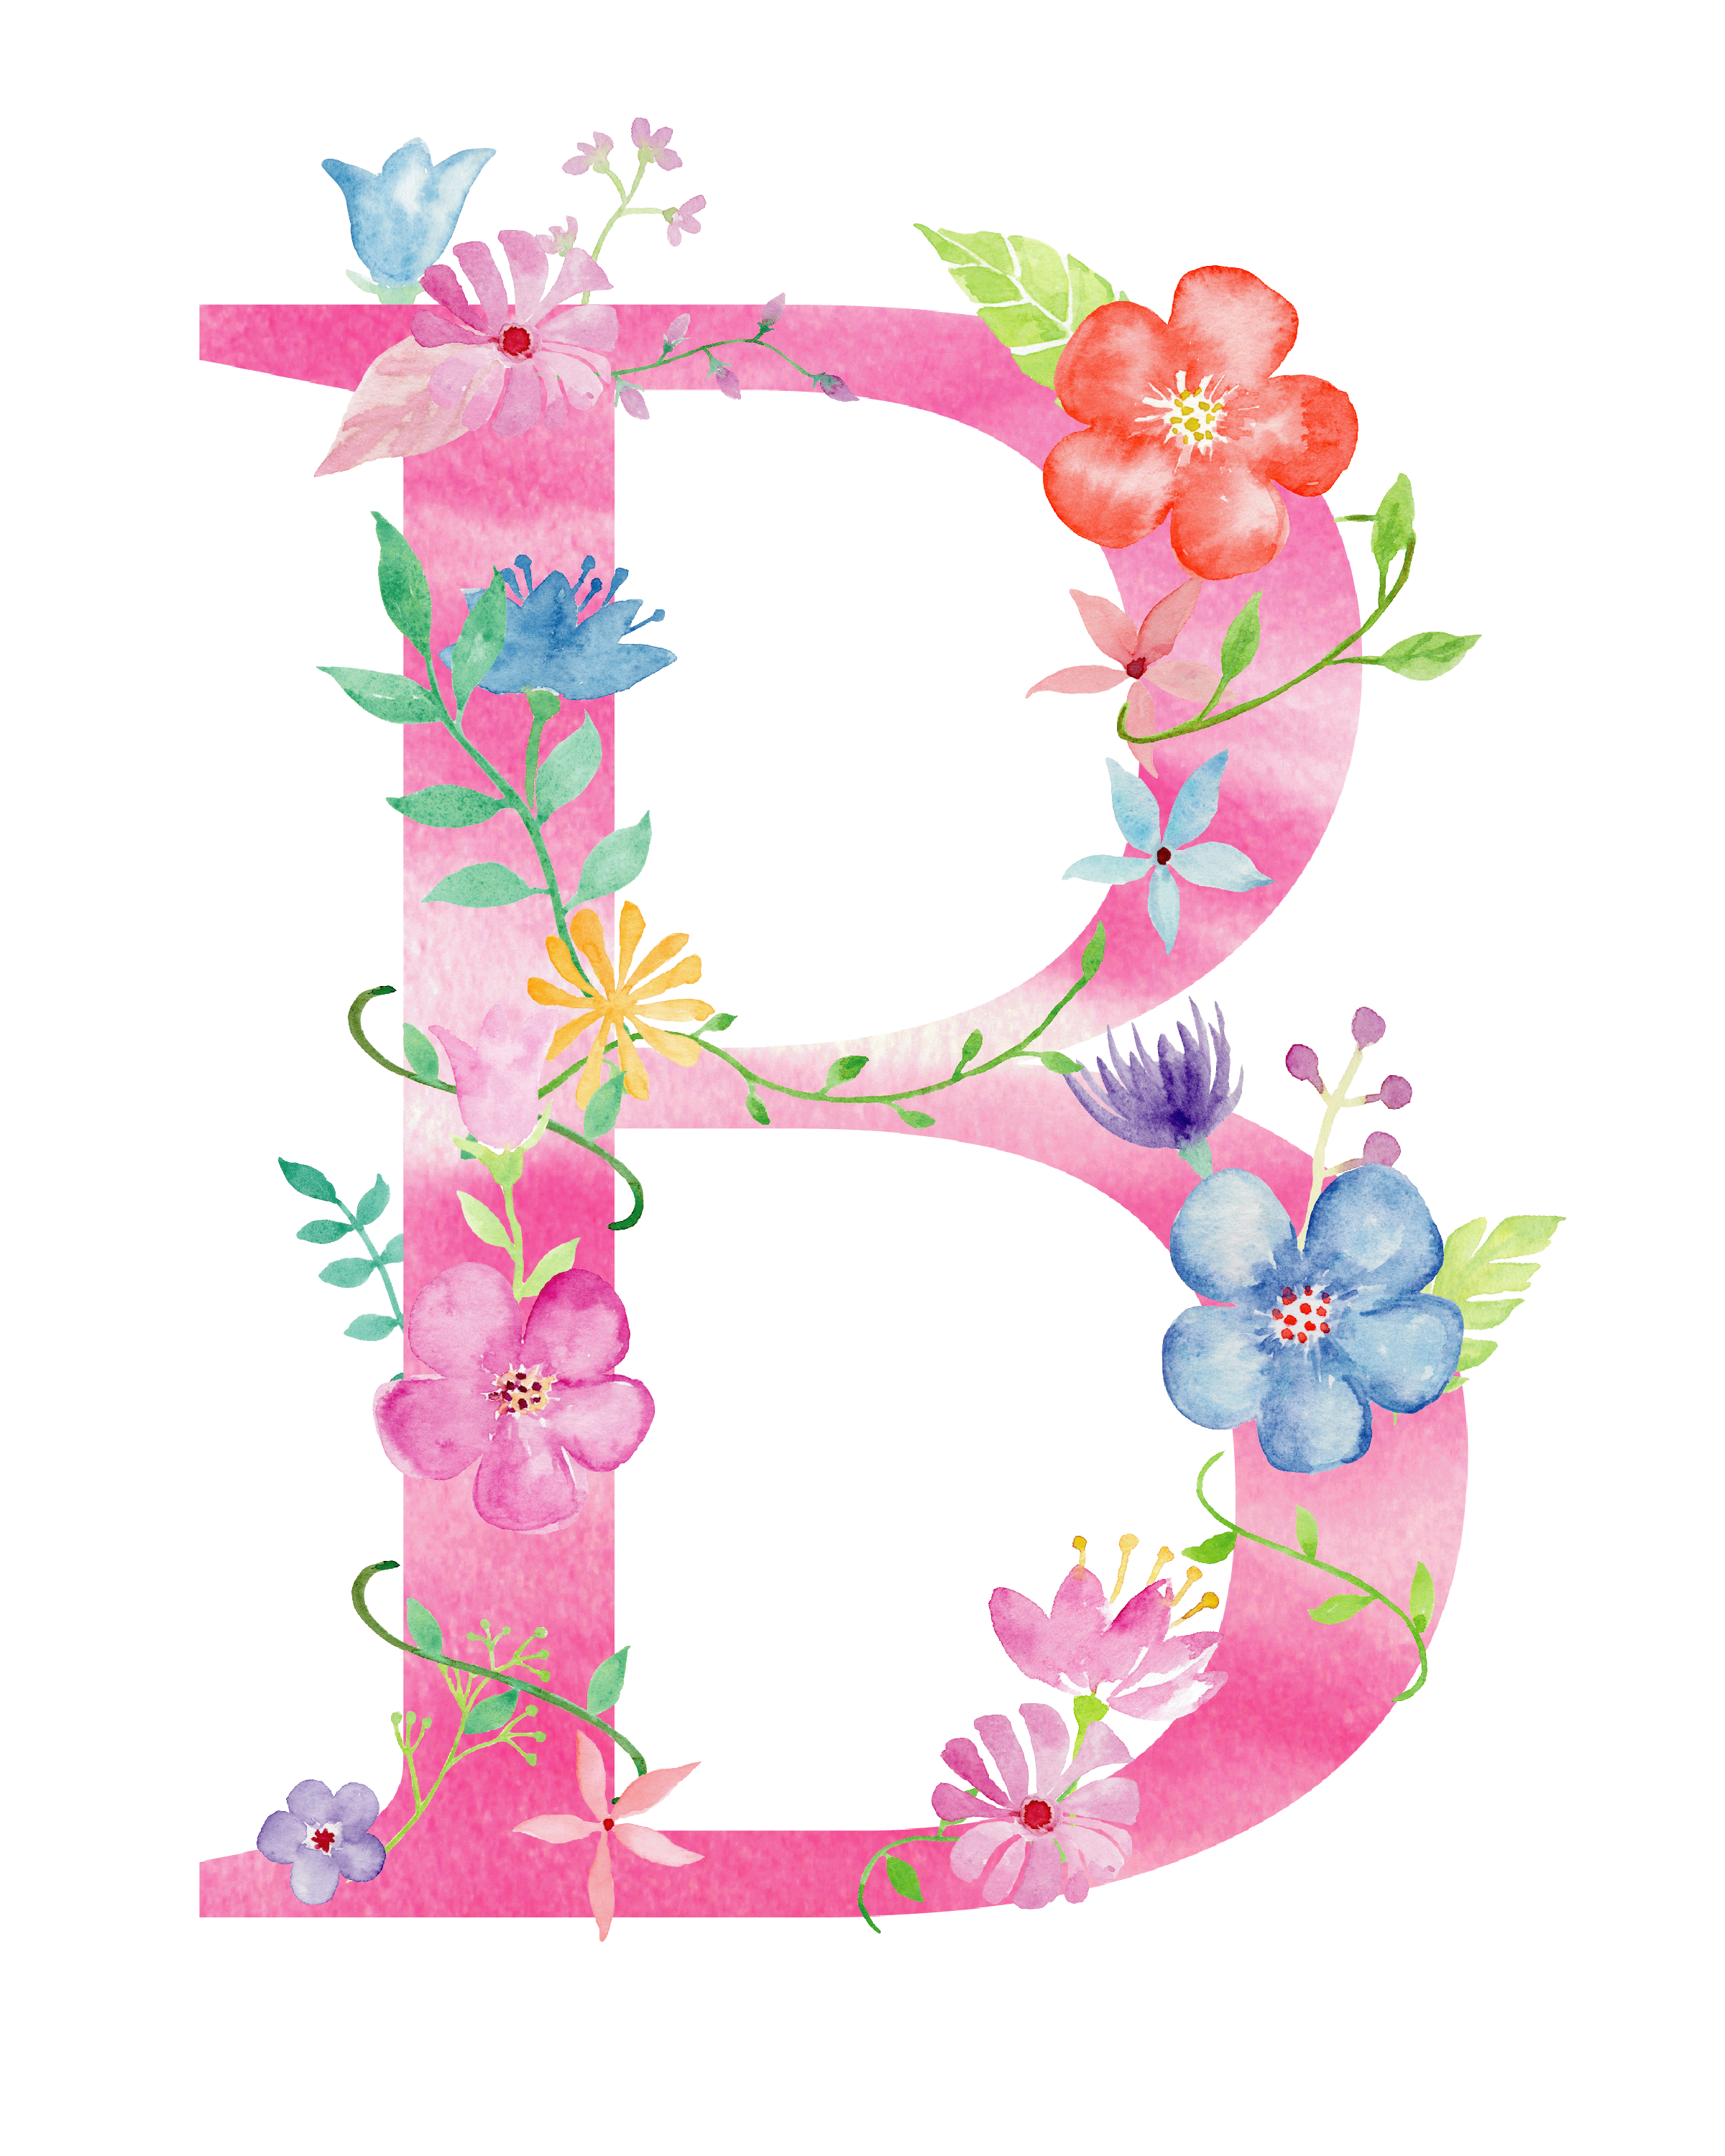 Floral Alphabet Free Download Image PNG Image